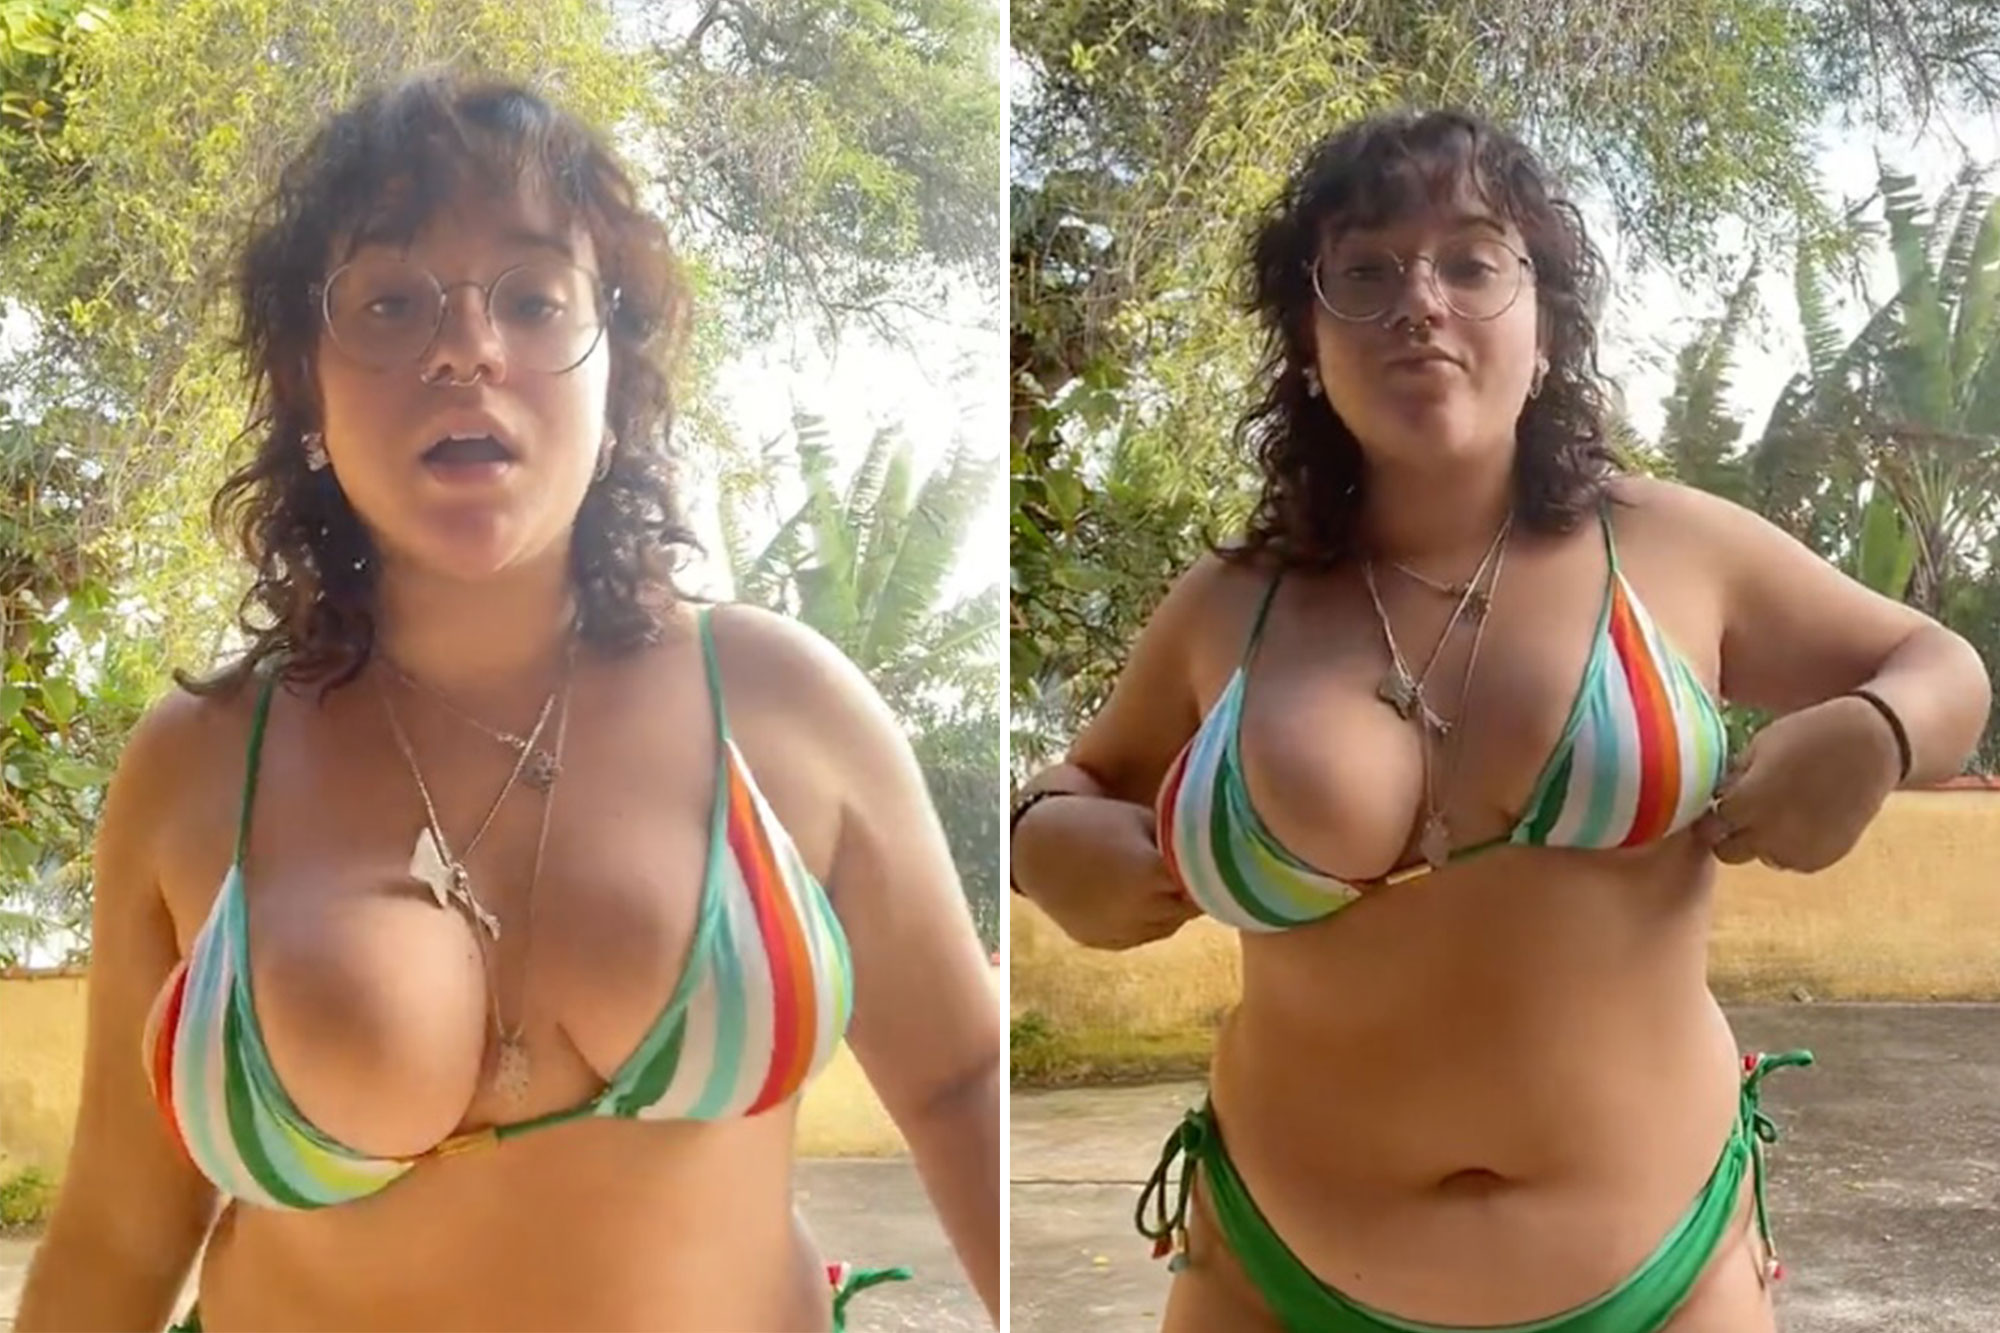 doug battles recommends big fat boobs videos pic